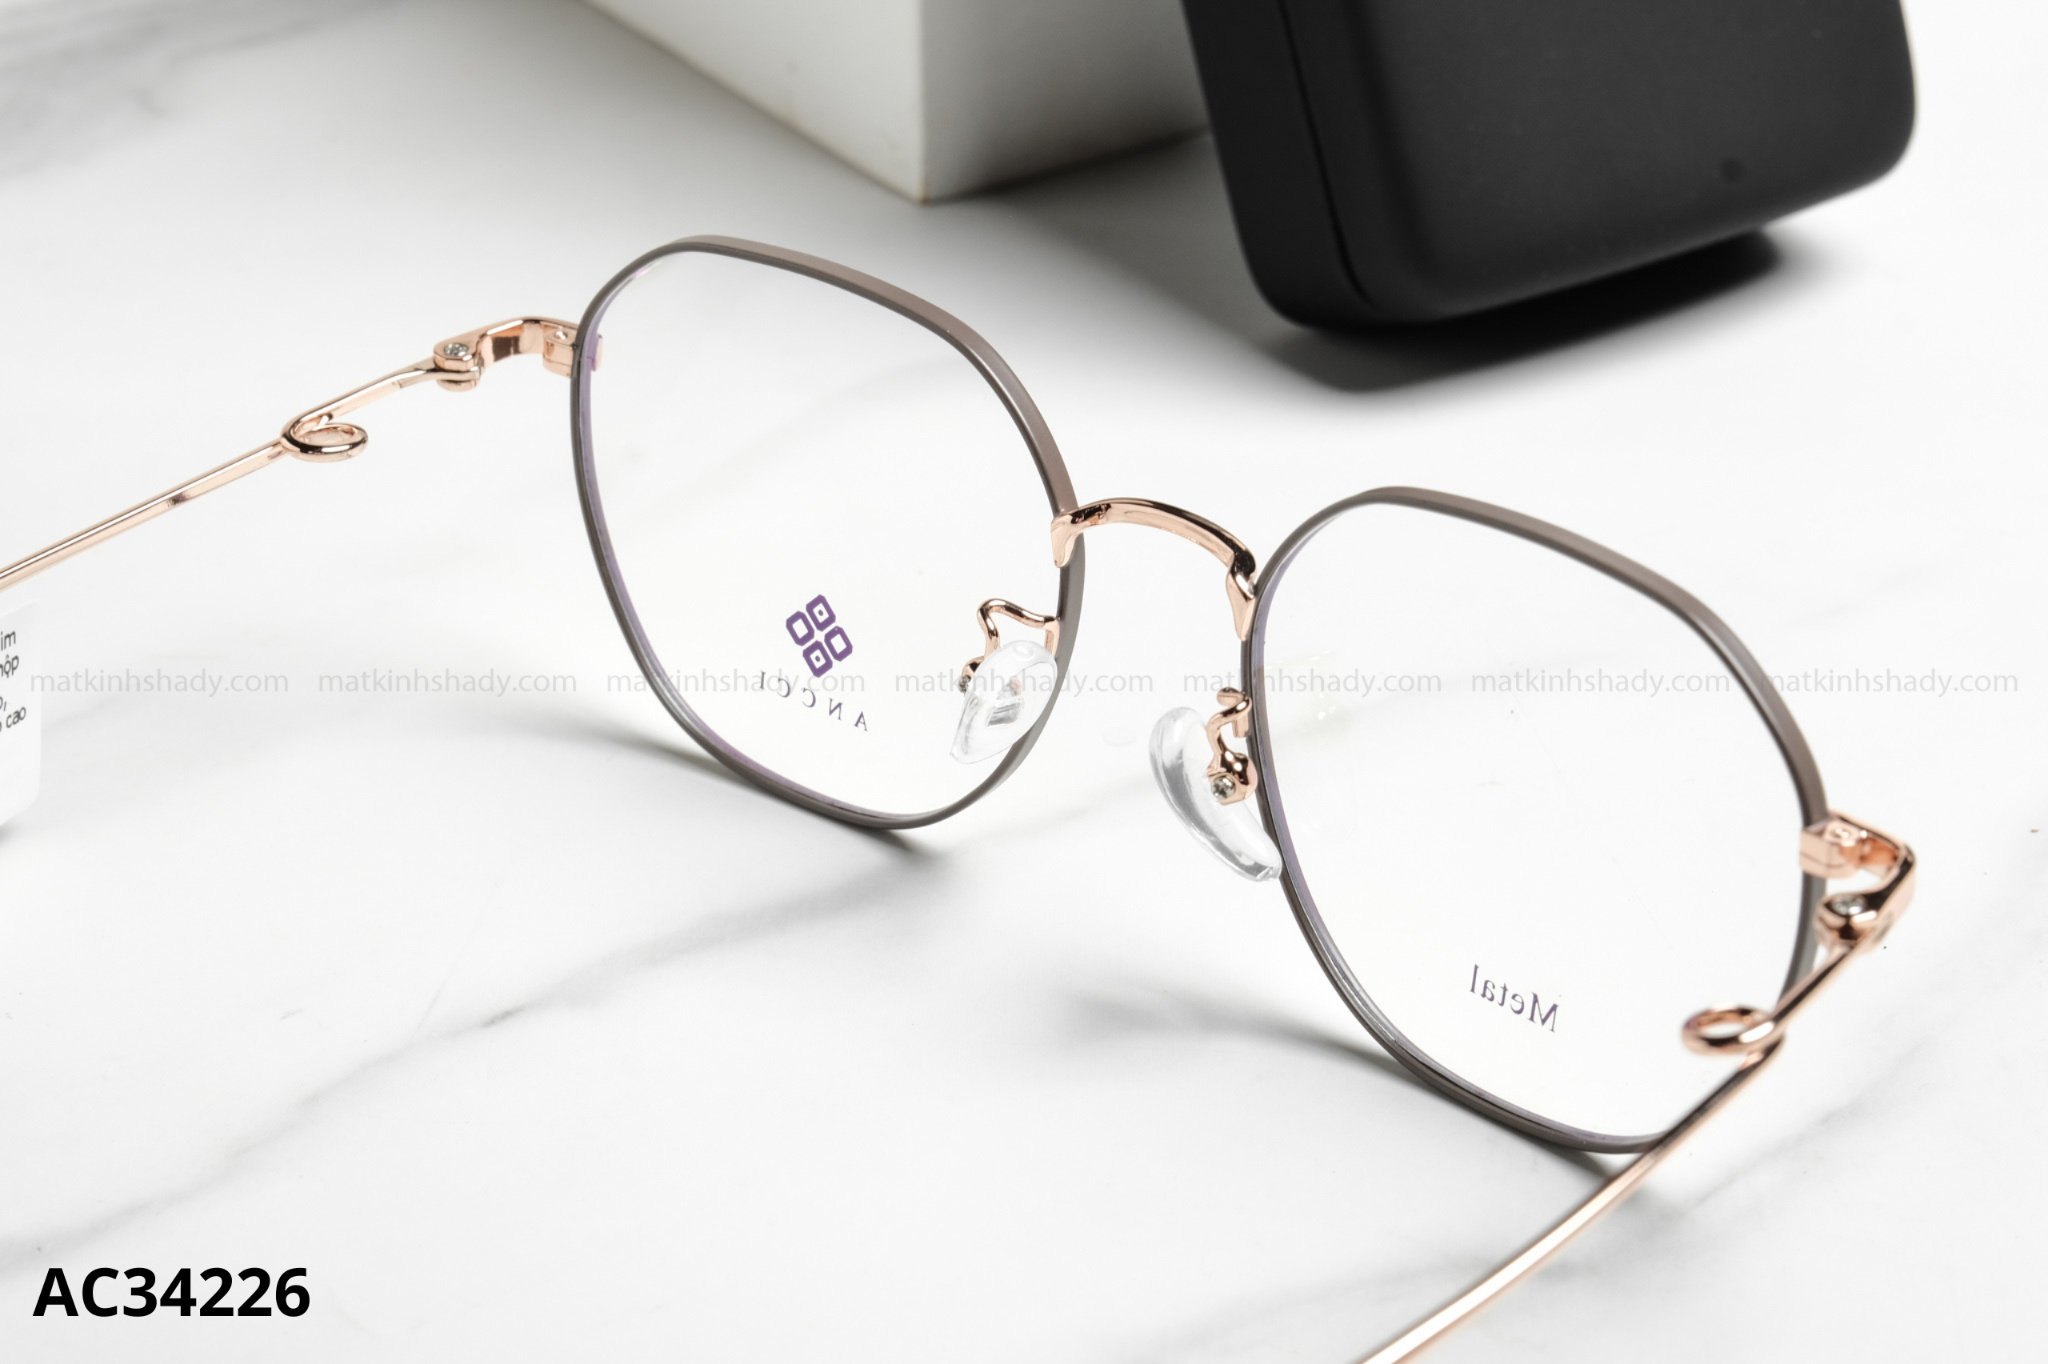  ANCCI Eyewear - Glasses - AC34226 